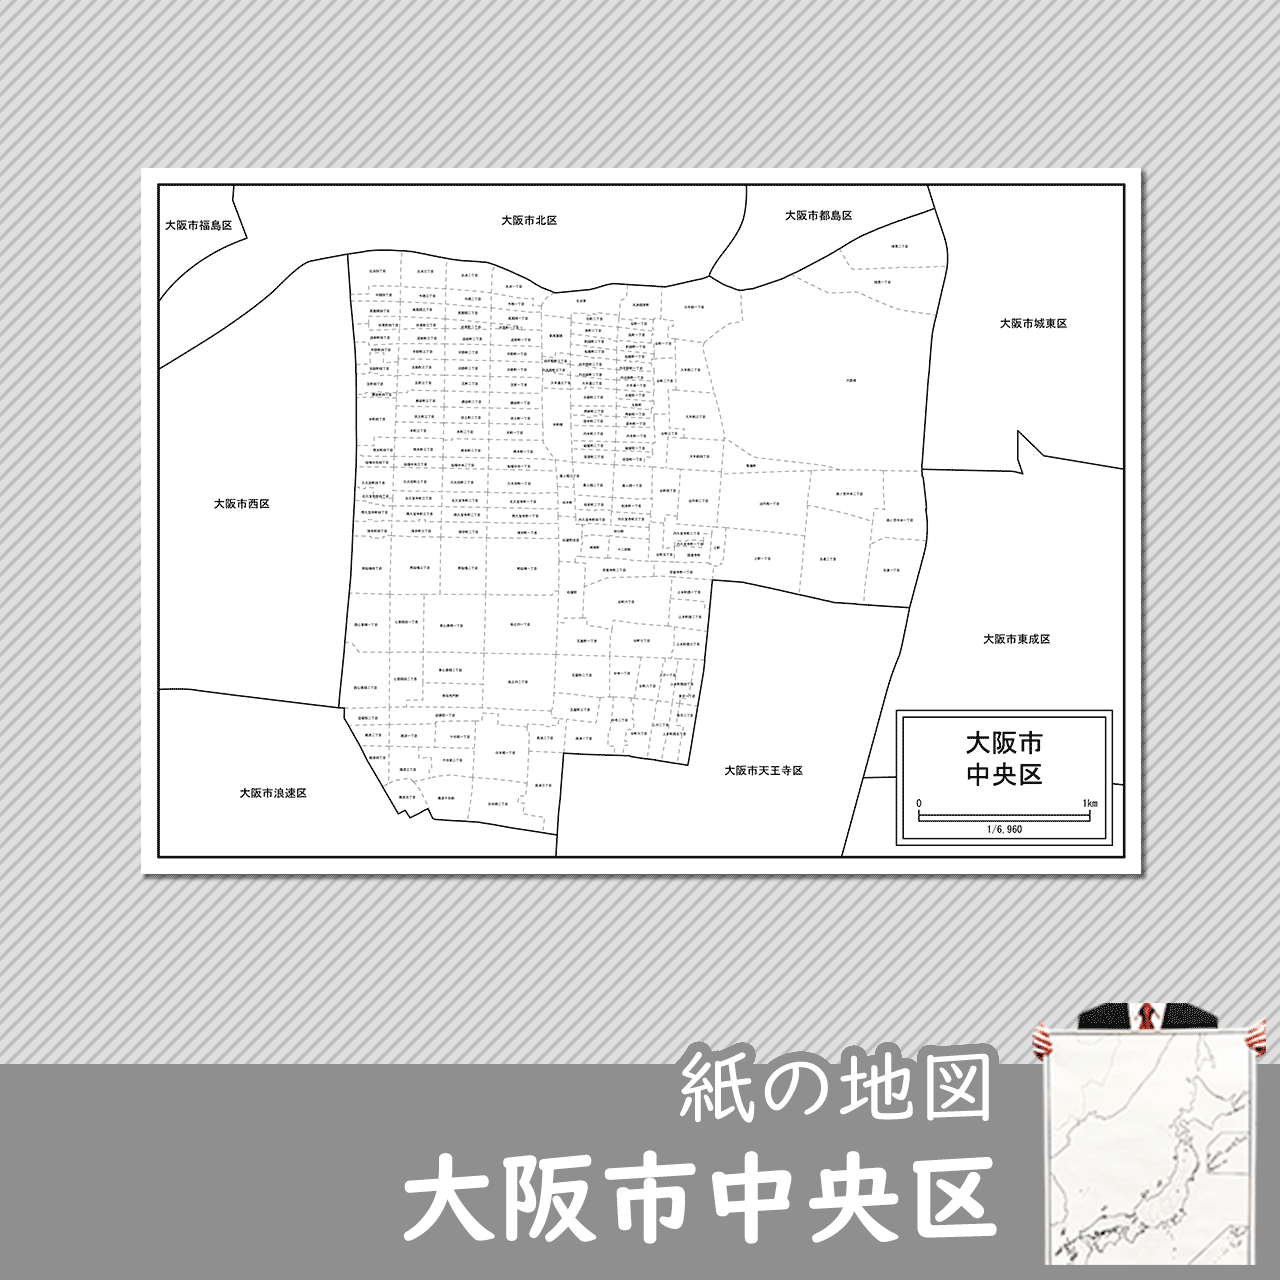 大阪市中央区の紙の白地図